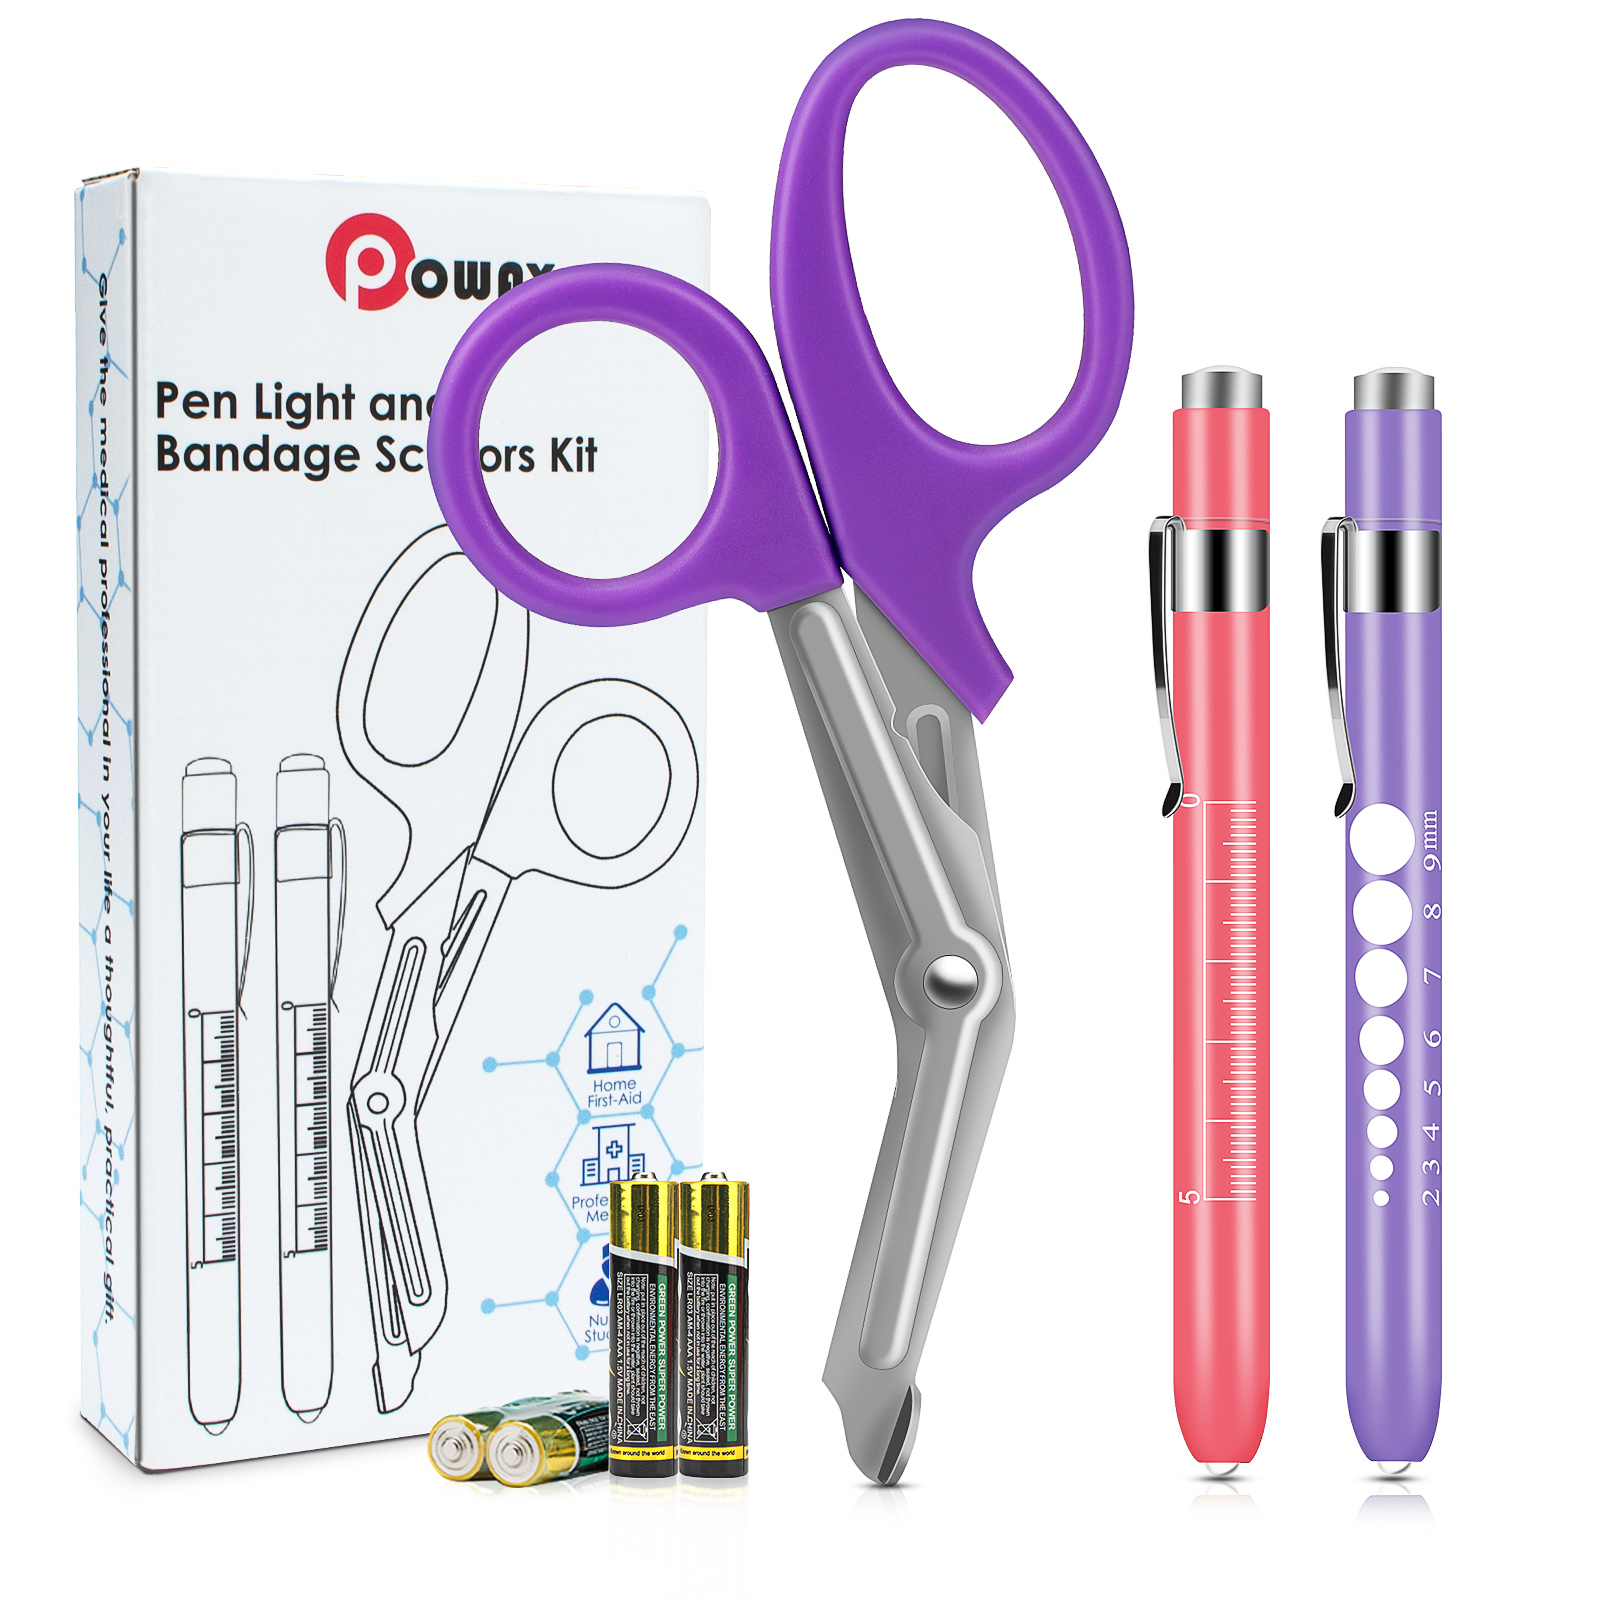 OPOWAY Medical Pen Light et Ciseaux à Bandage Violet 3 Pack, Deux lampes-stylos LED réutilisables pour élèves, avec des piles gratuites